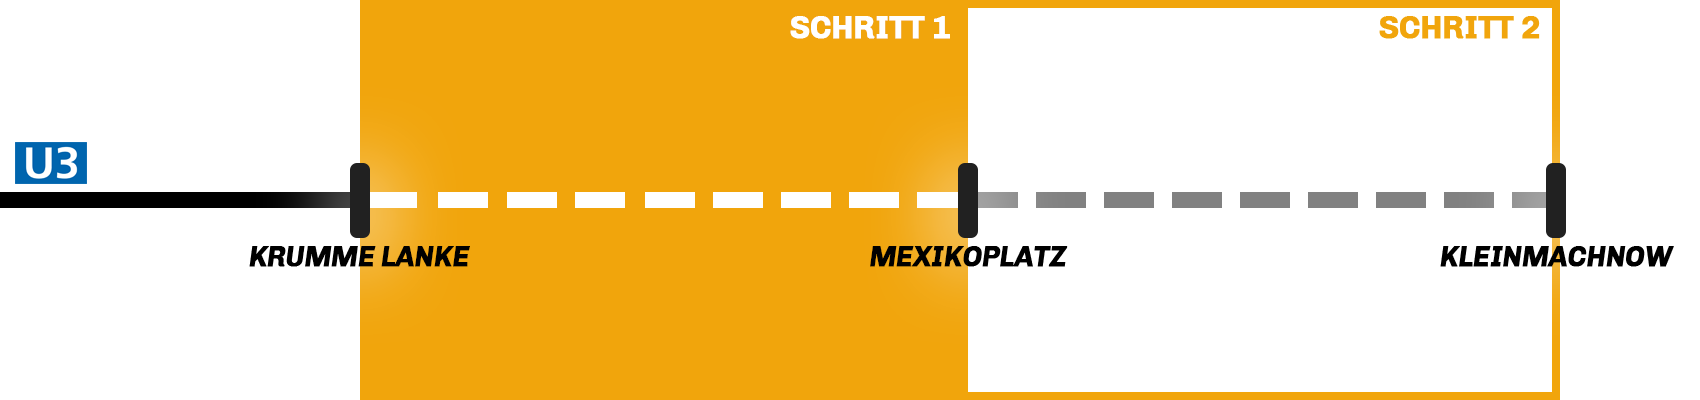 Kleinmachnow-Erweiterung2